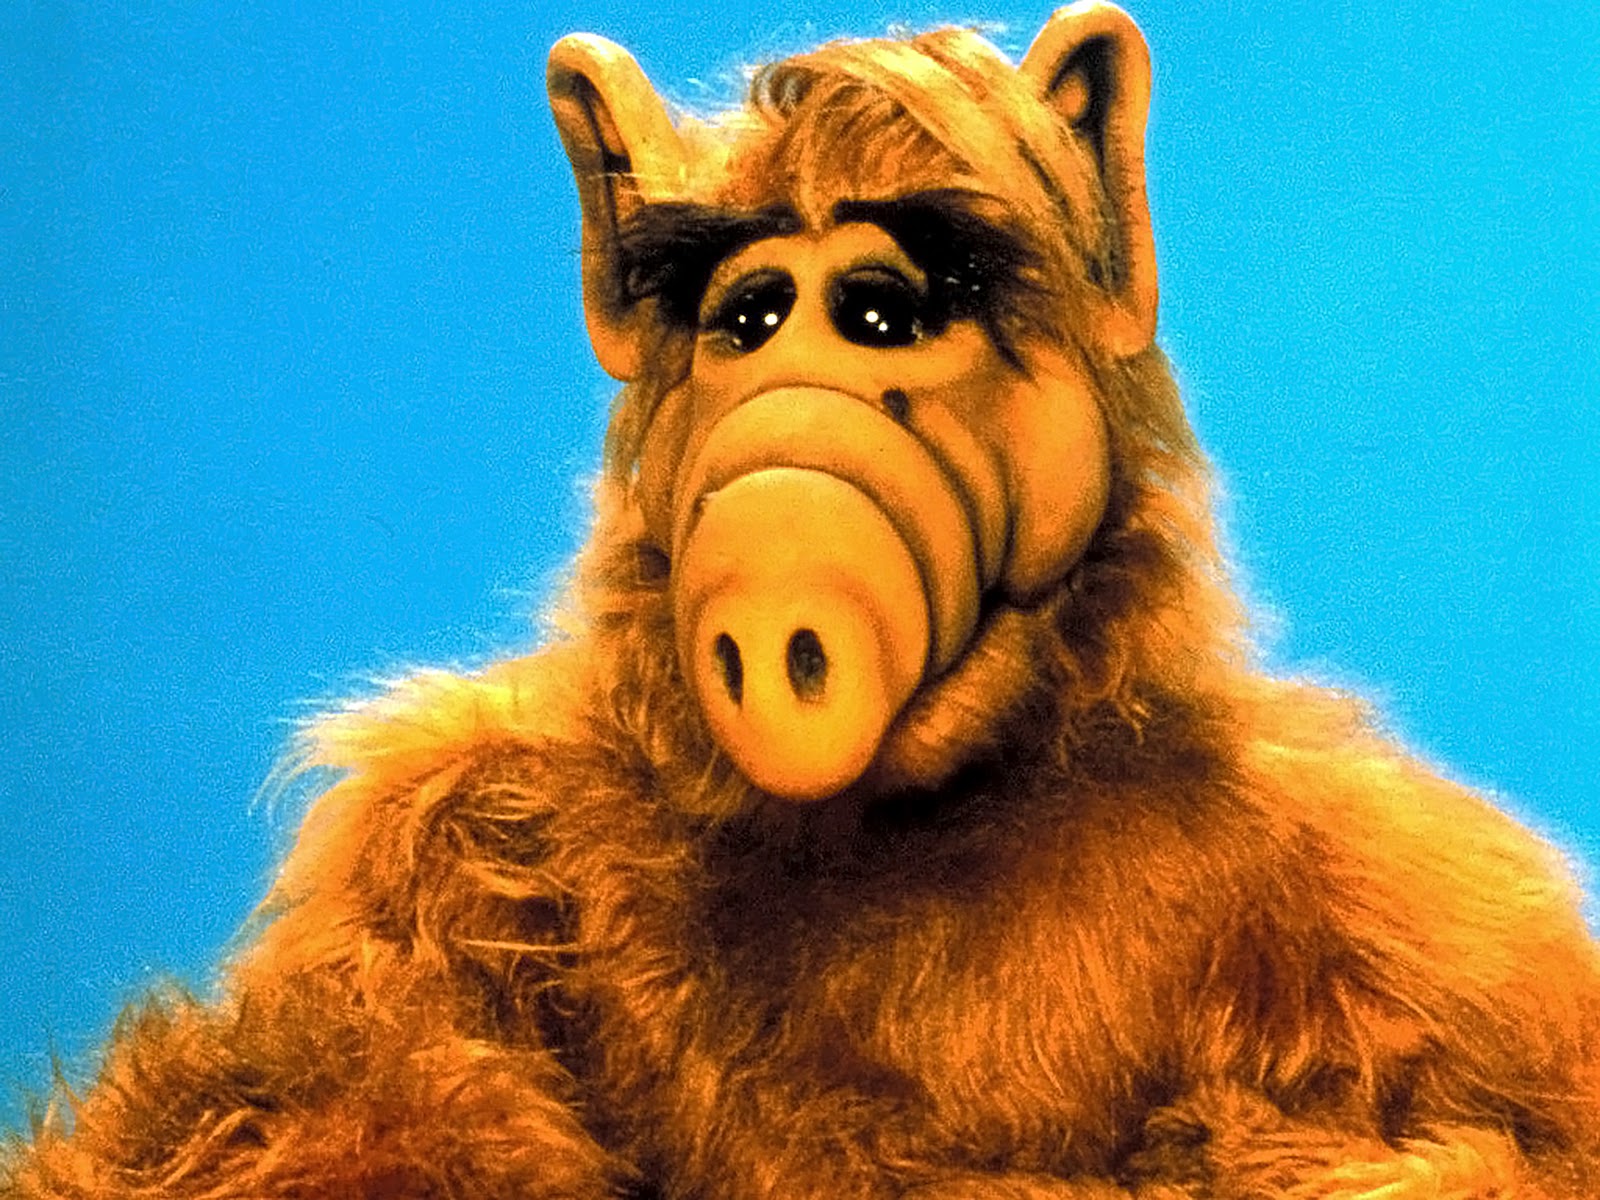 Le nouveau cinéphile: La série Alf, l'extraterrestre, adaptée au cinéma !